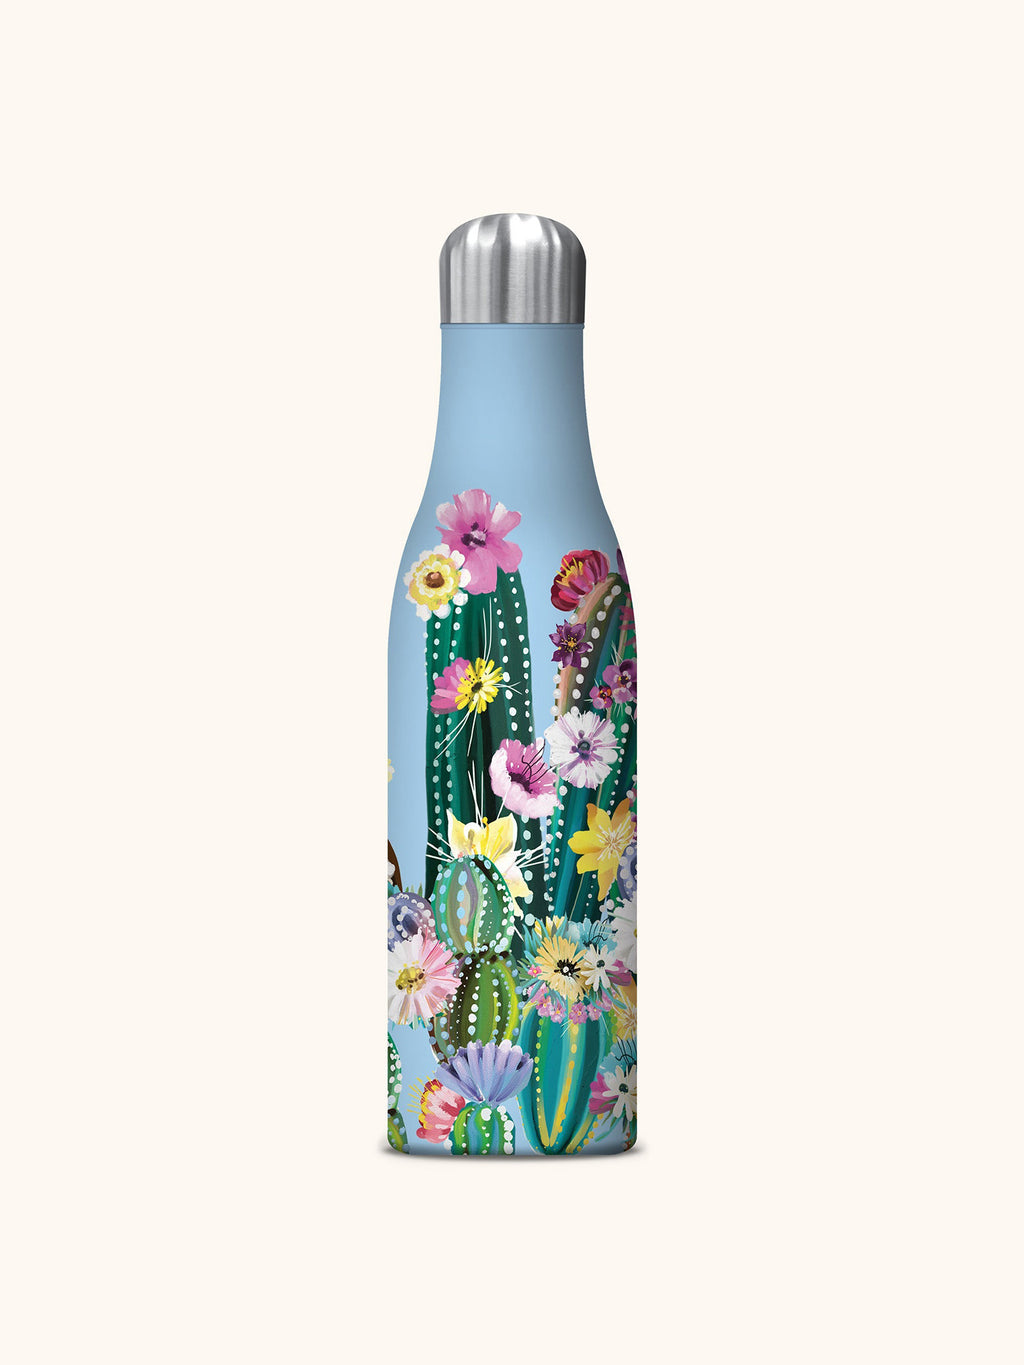 Blossom Village 20oz Water Bottle – Phoebe Wahl & Co.